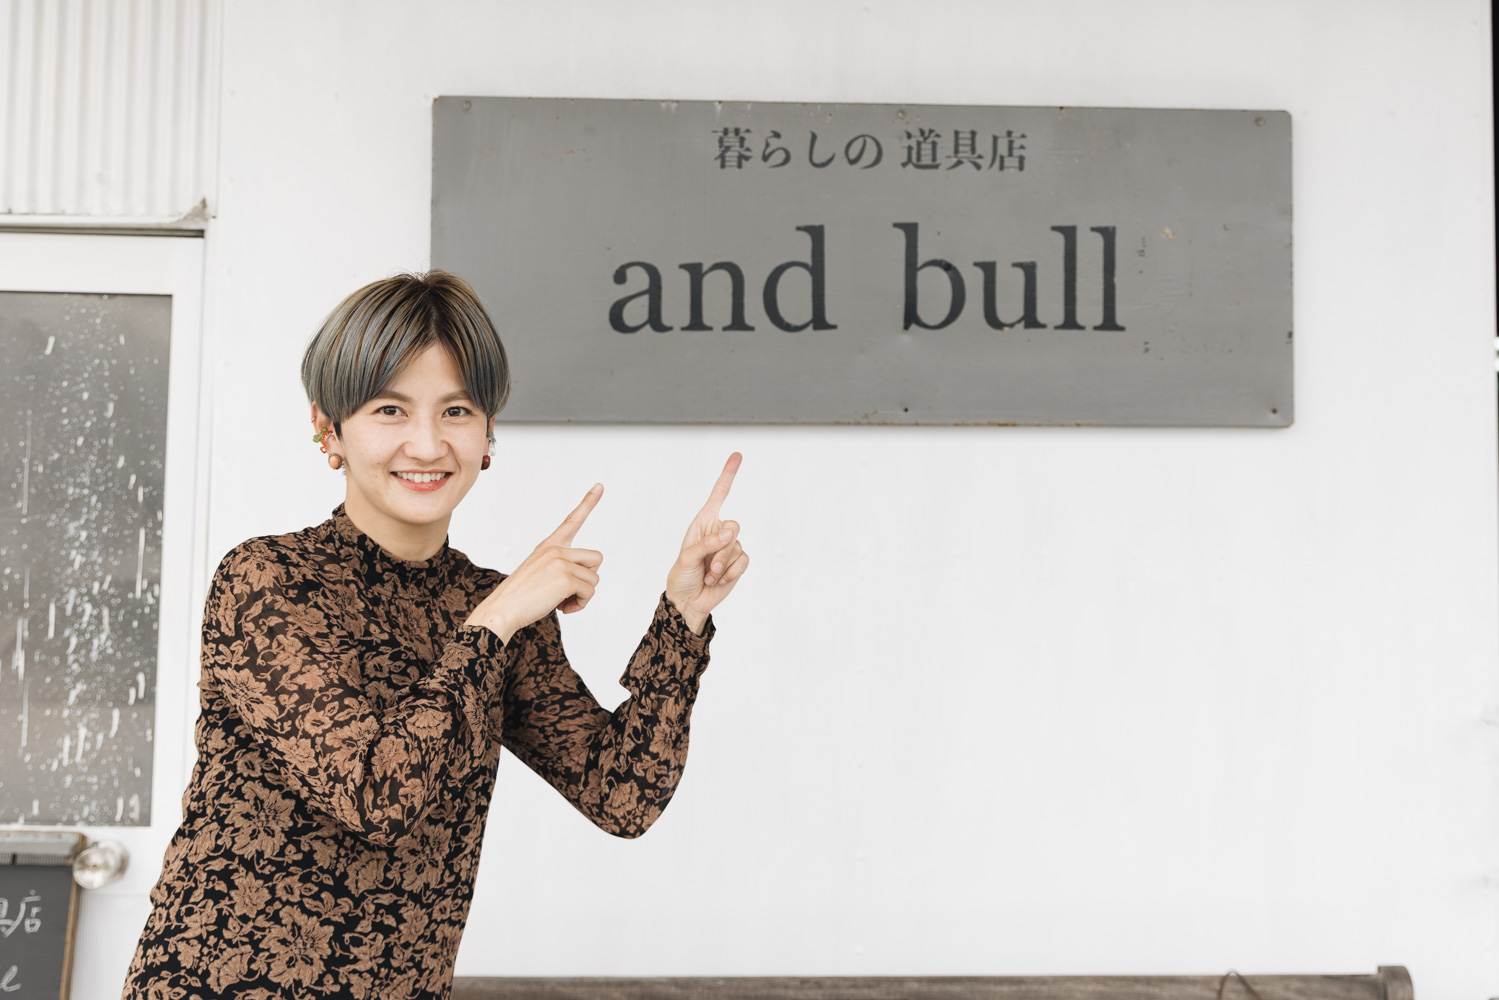 and bullさん